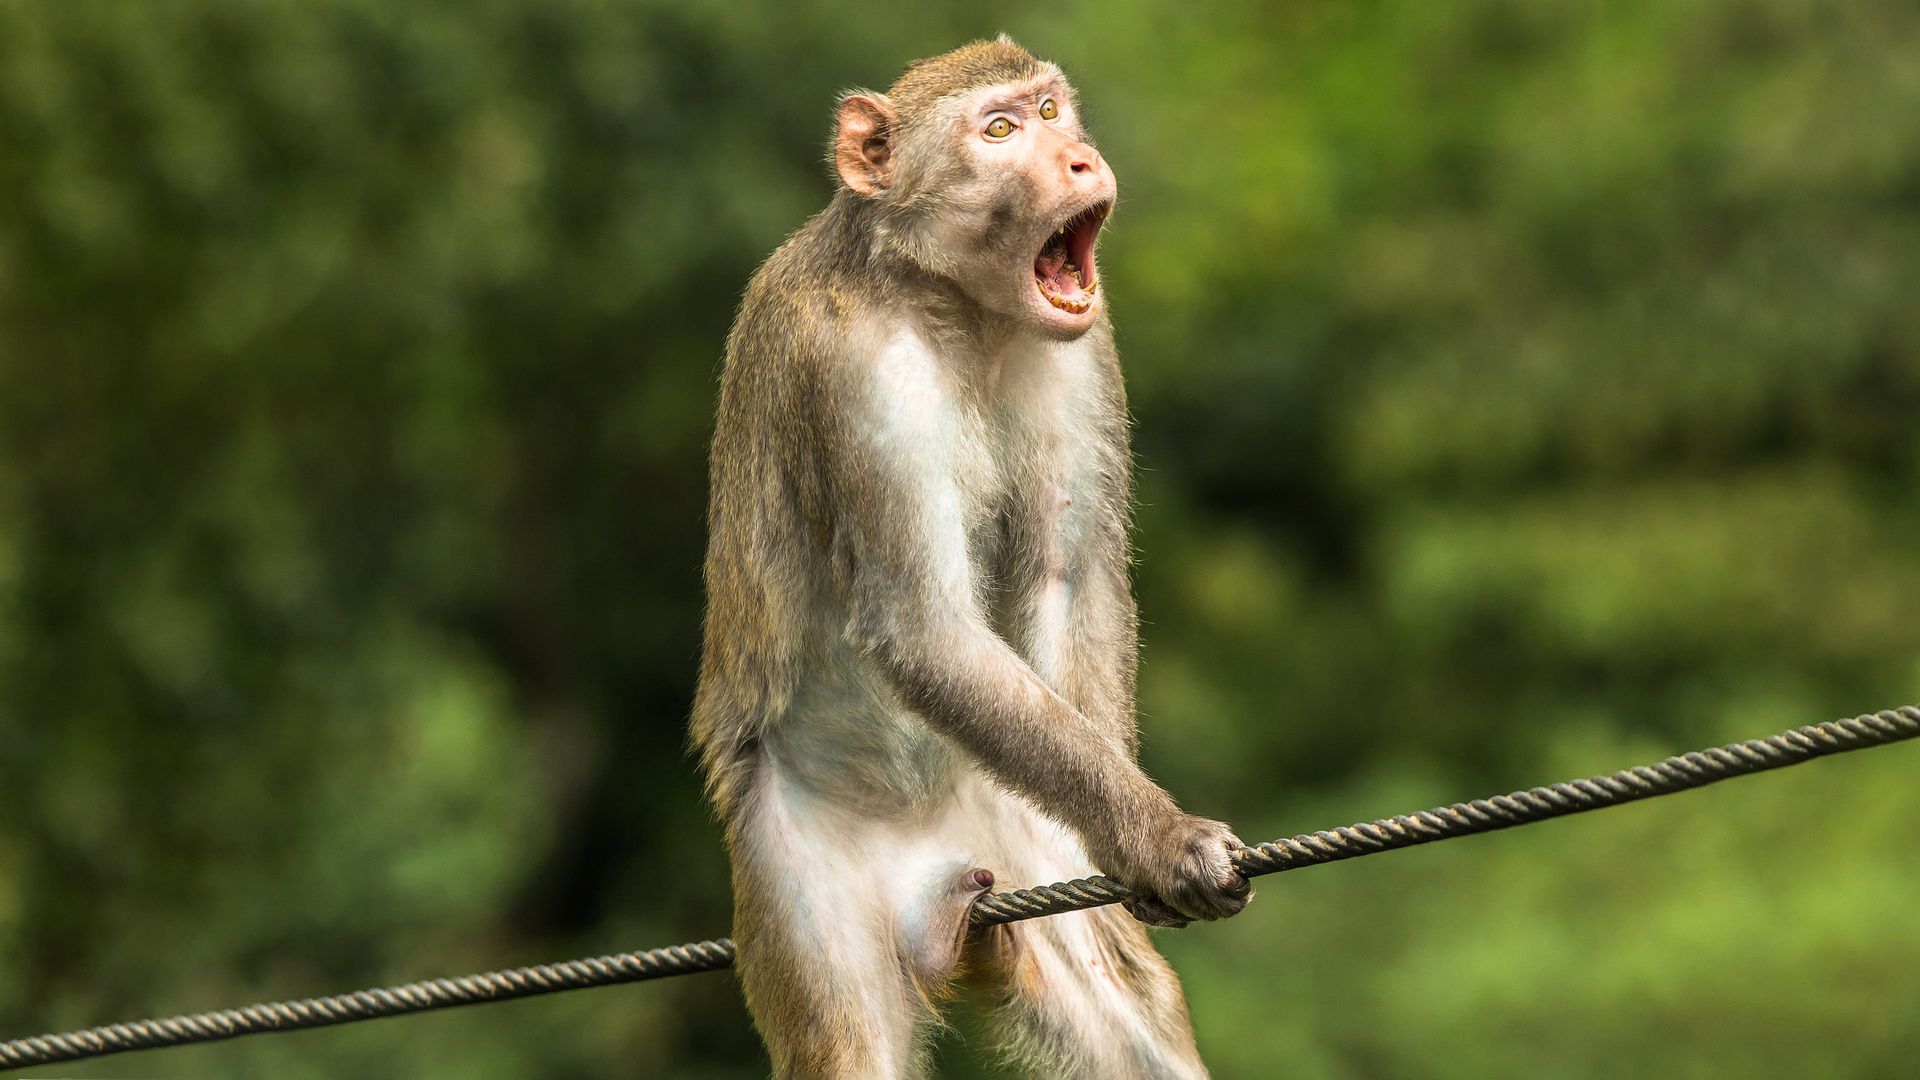 смешные картинки до слез обезьян